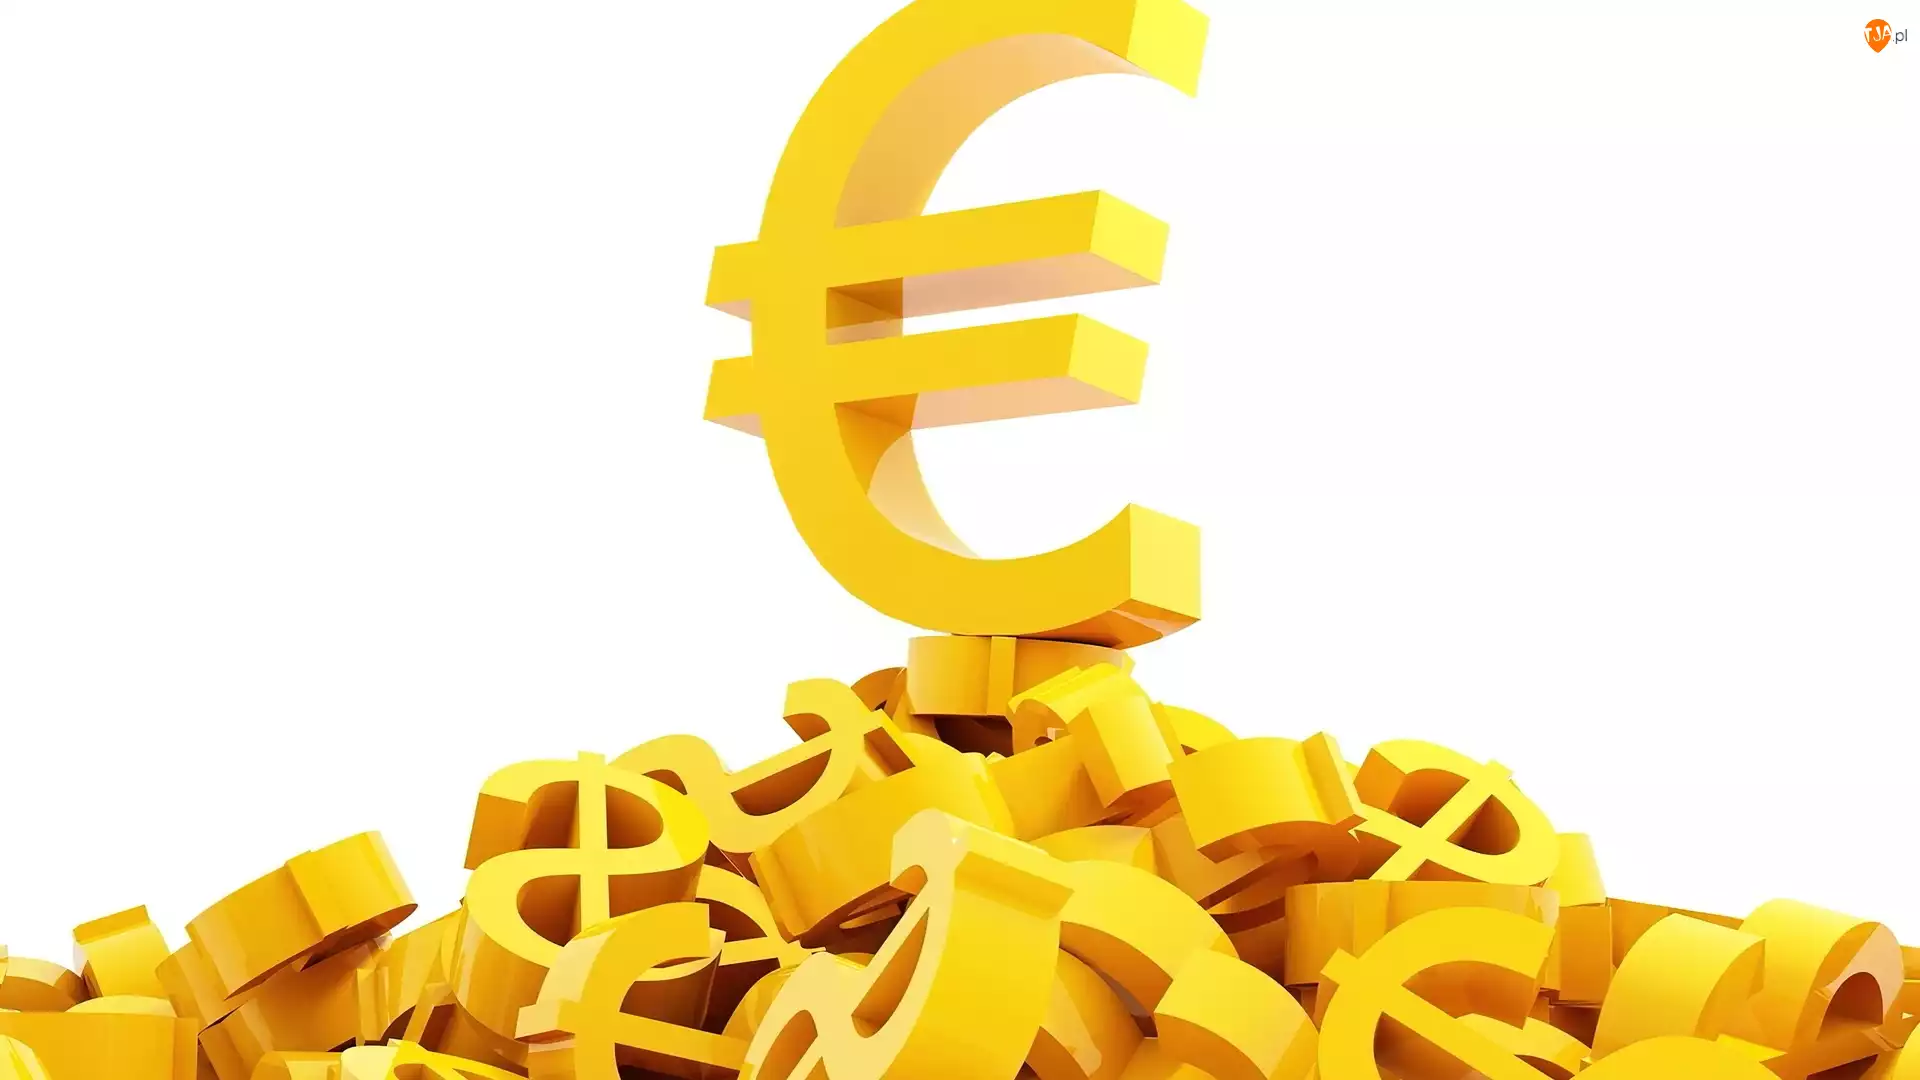 Pieniądze, Symbol, Euro, Dolary